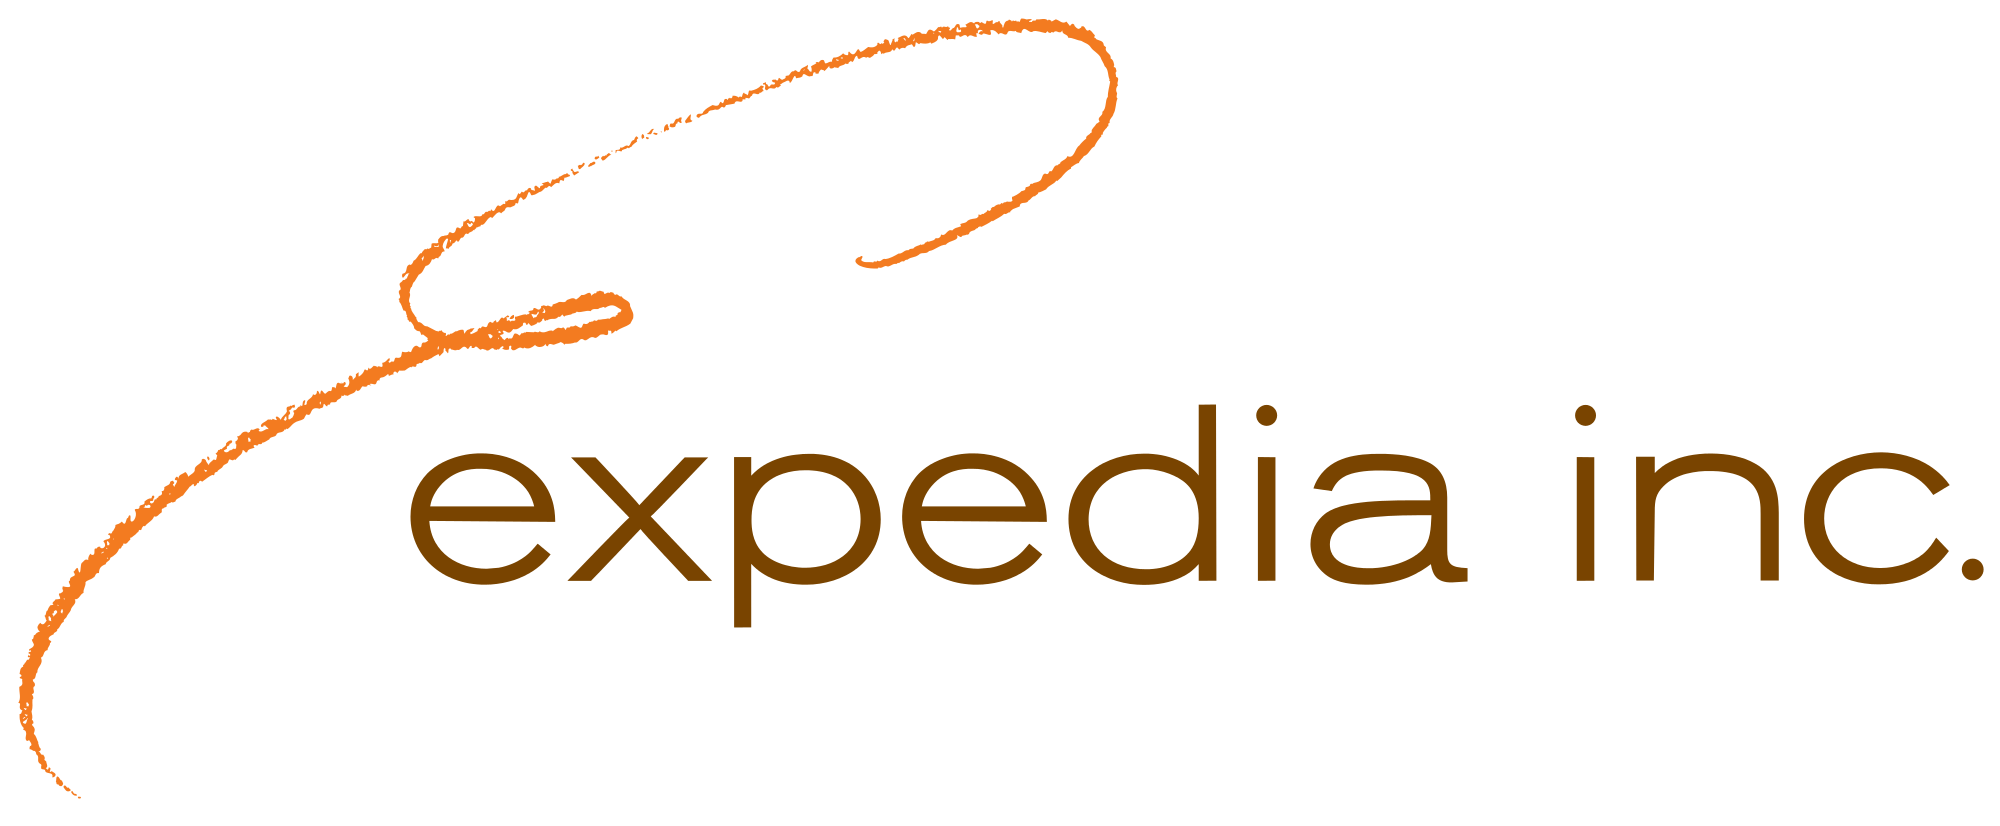 Expedia Inc. Logo - Expedia Inc. logo.svg